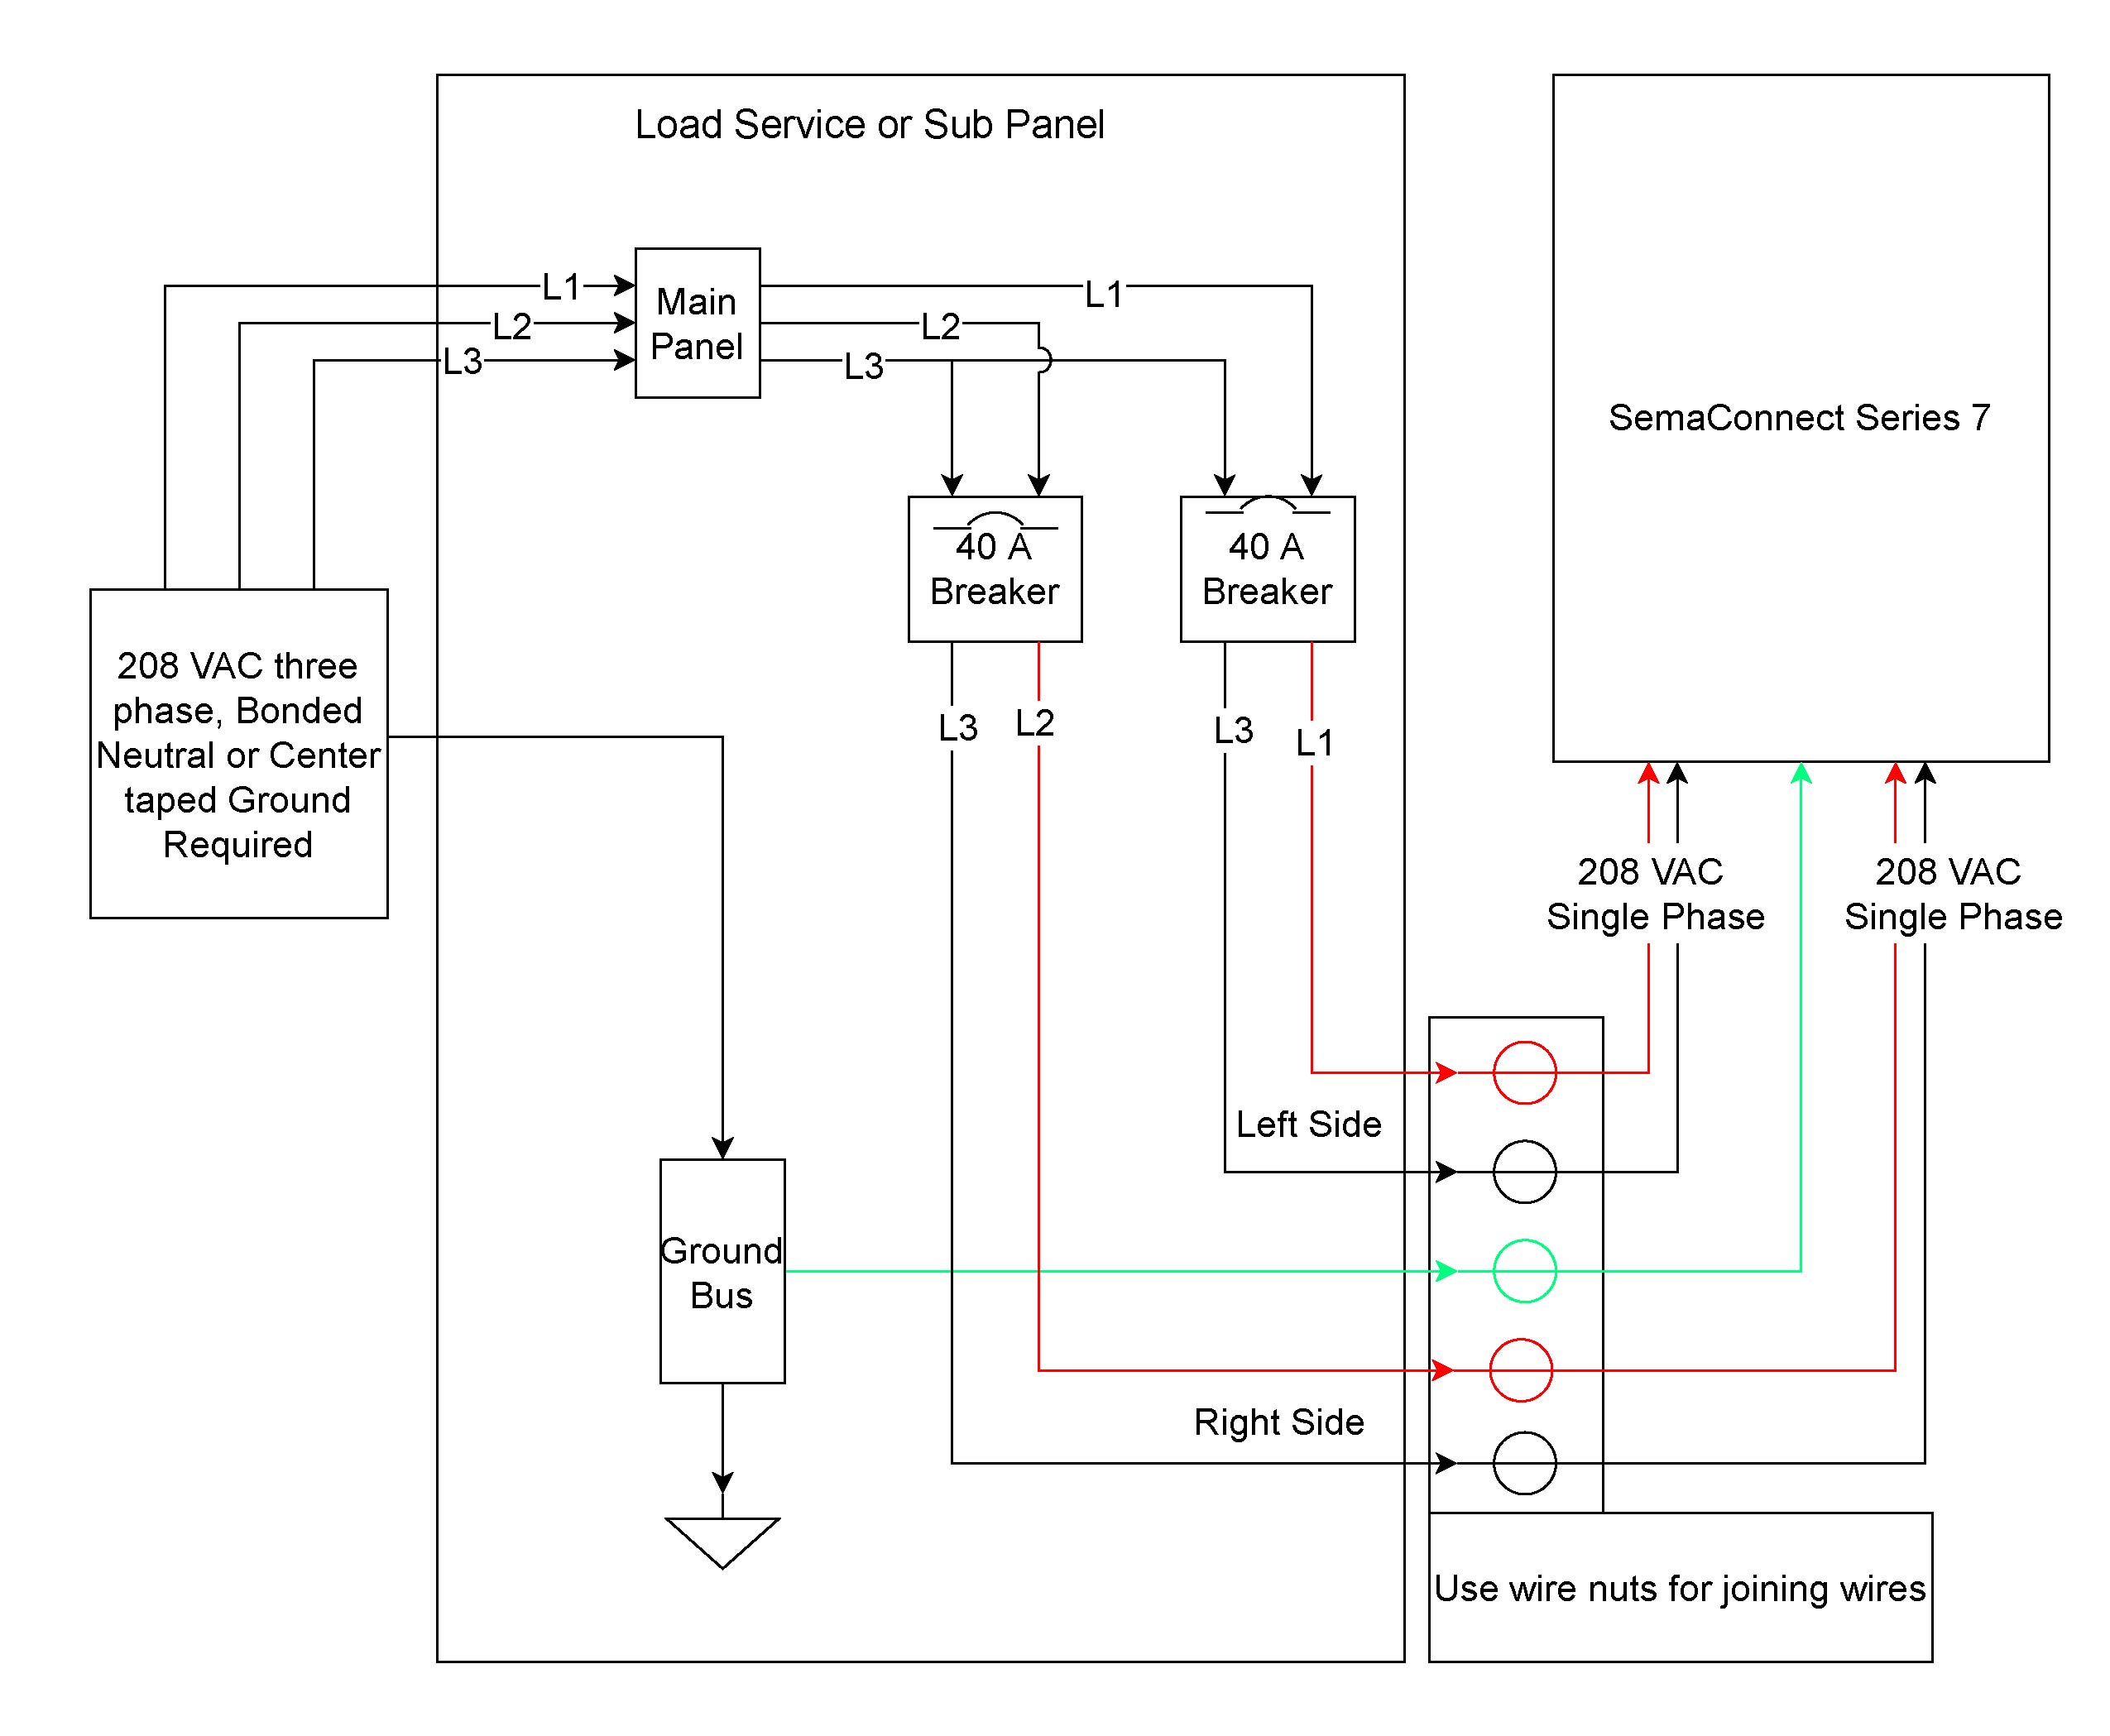 pw5110 wiring diagram